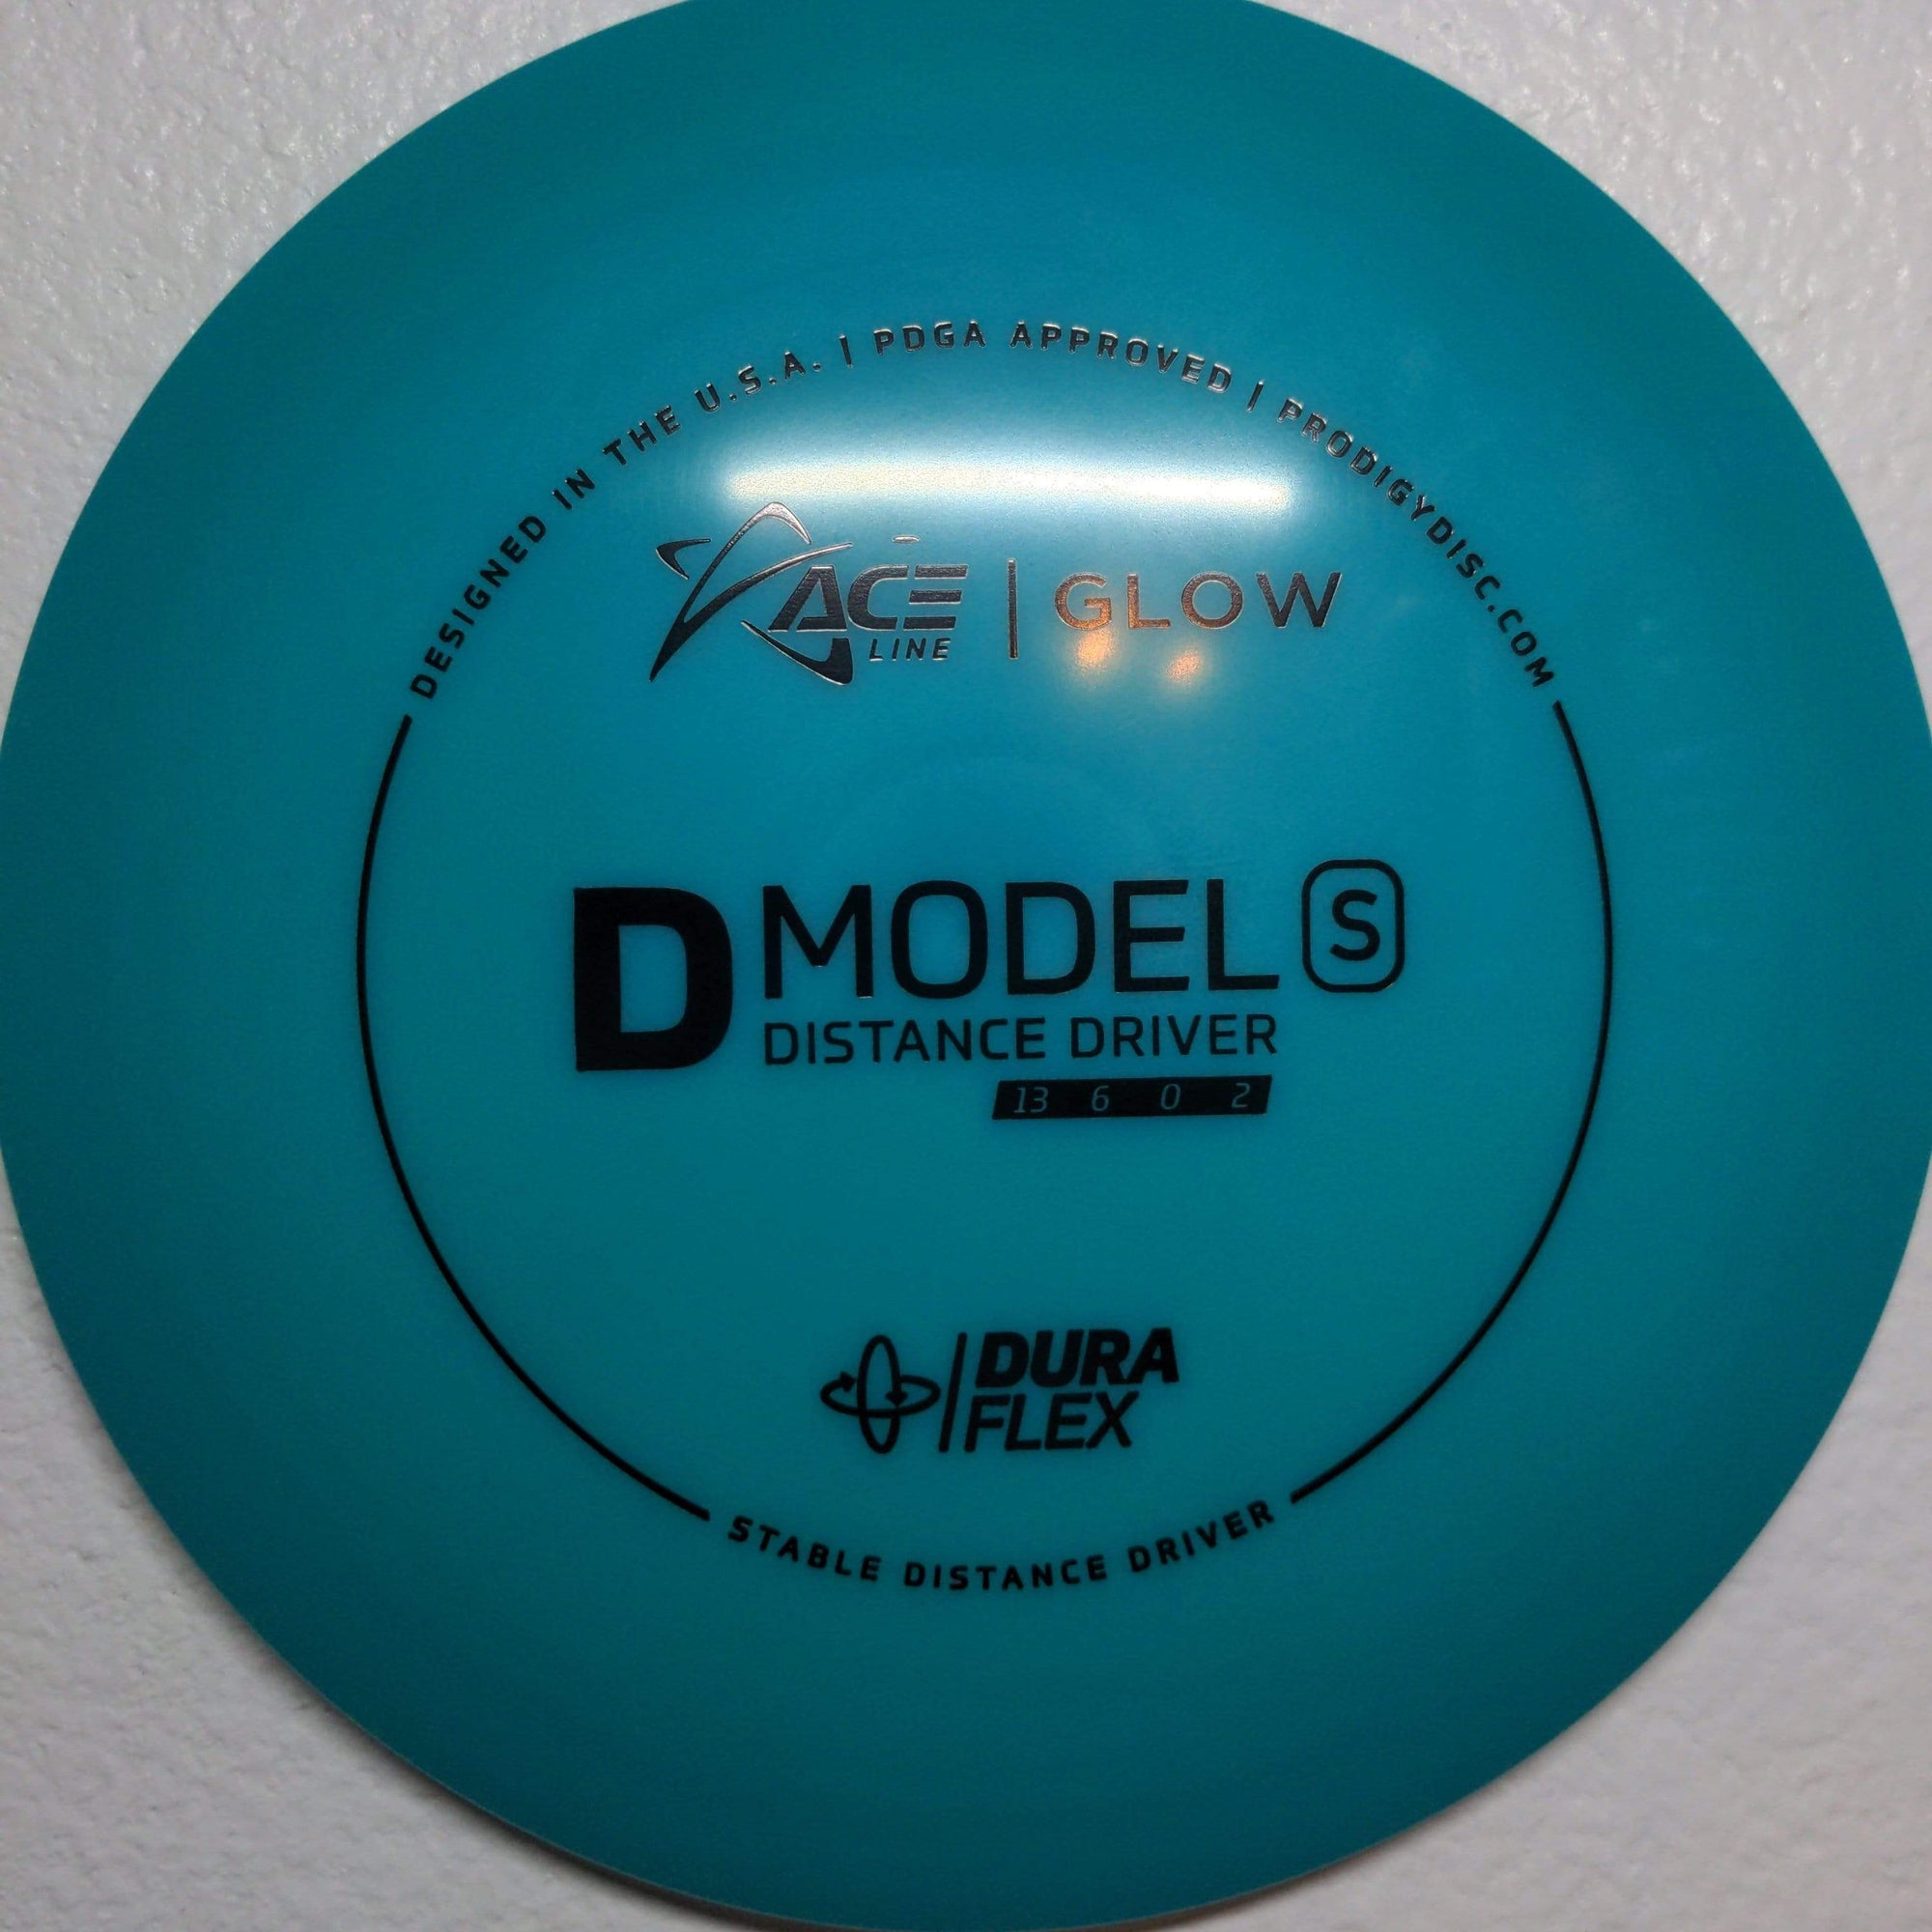 Prodigy Distance Driver Blue 174g Ace Line D Model S, DuraFlex Glow